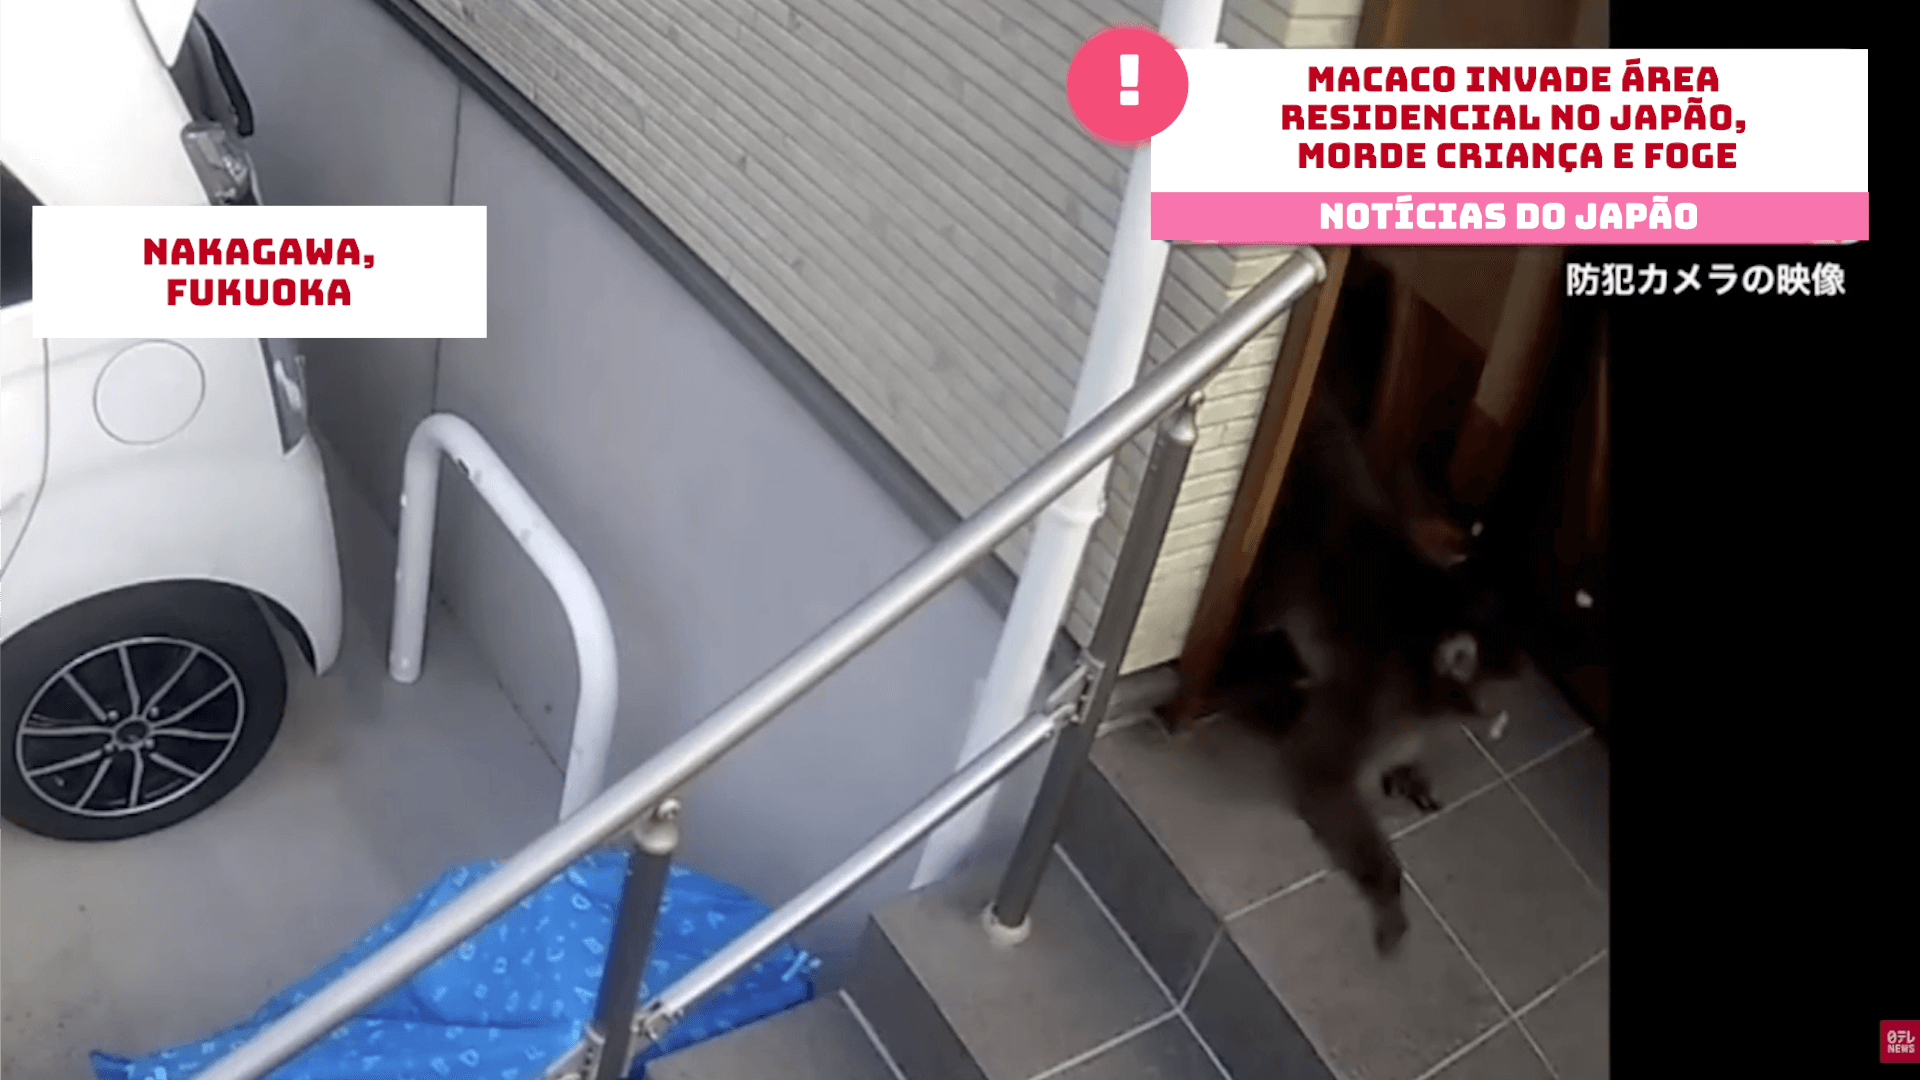 Macaco invade área residencial no Japão, morde criança e foge